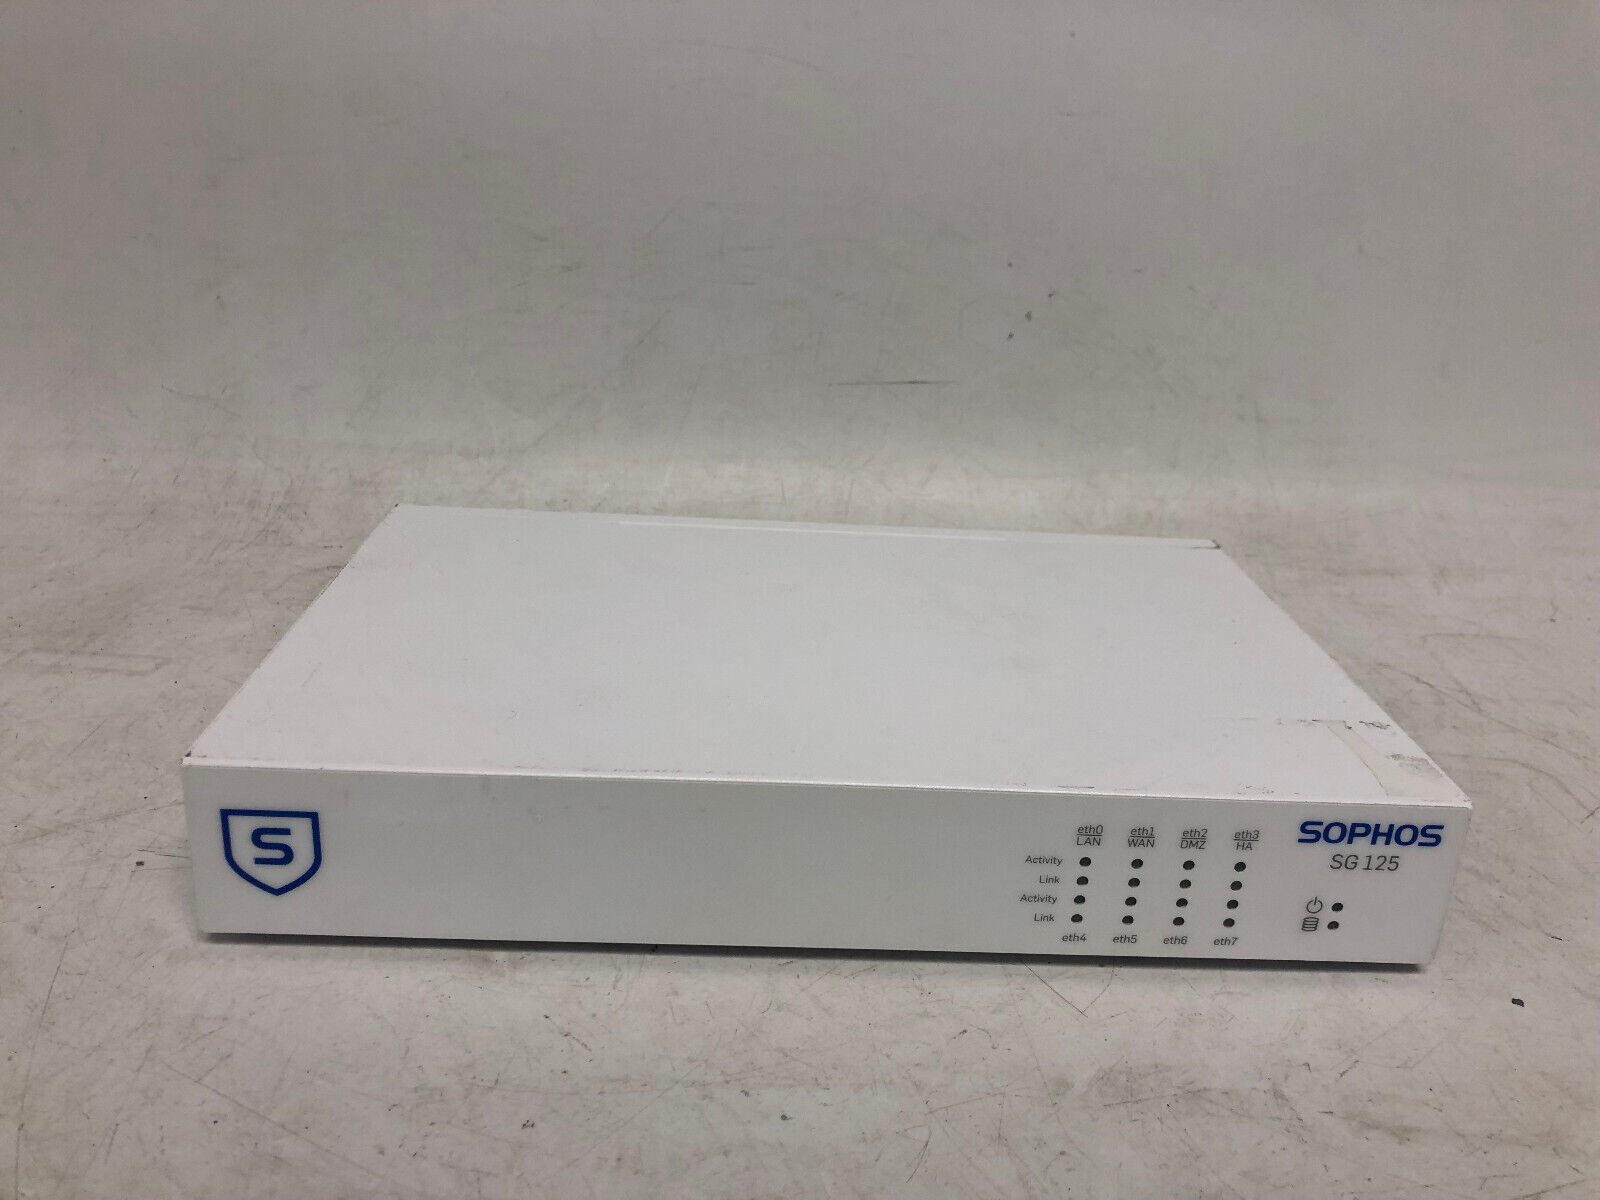 Sophos SG125 rev.1 Firewall 8-Port Router For Parts